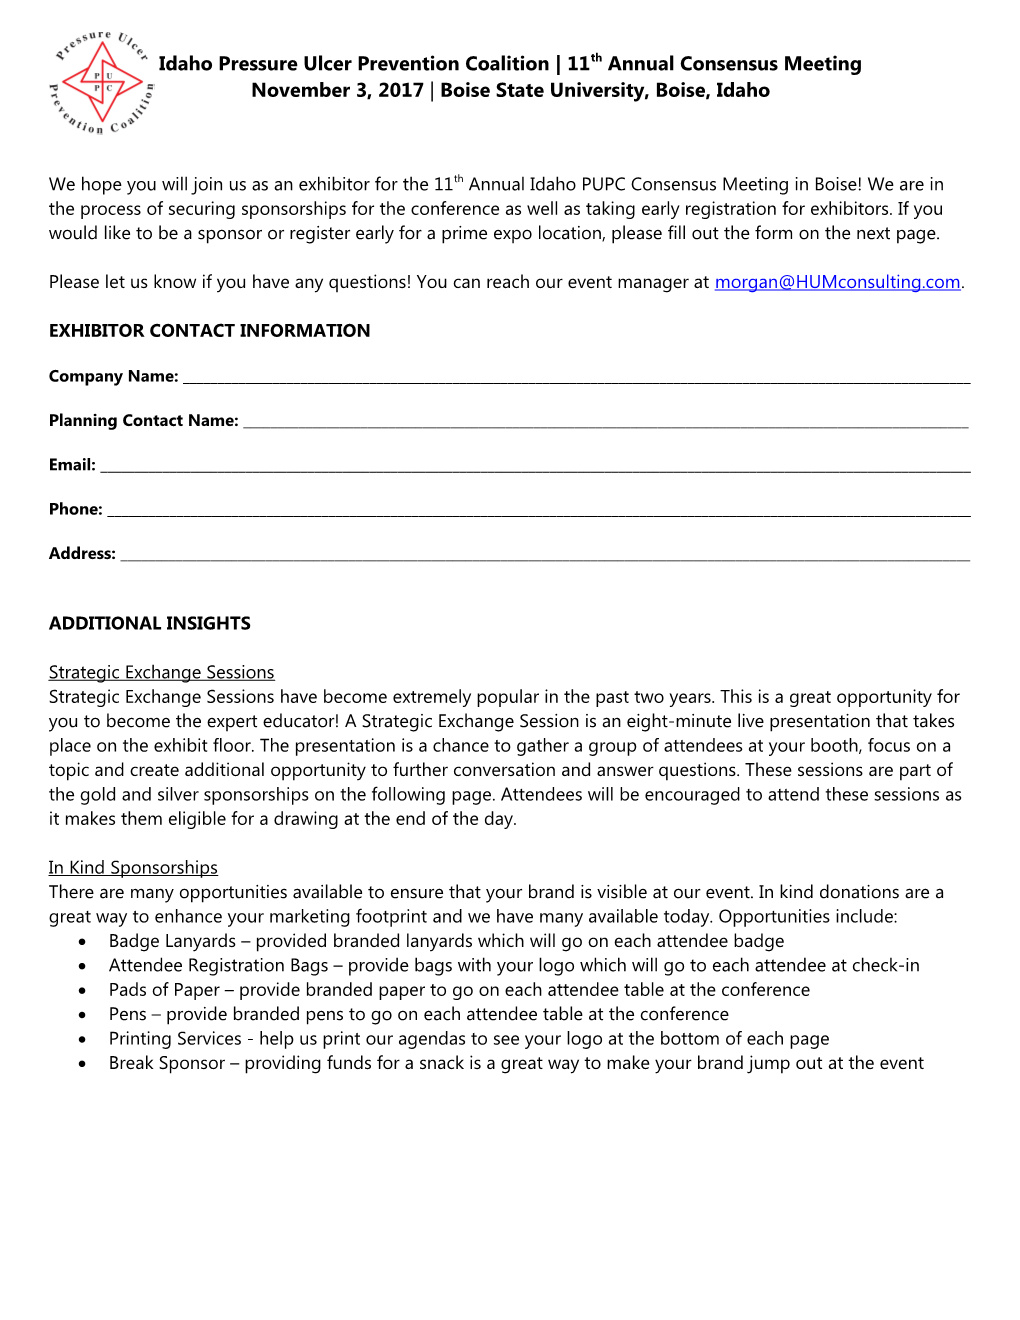 Northwest Region WOCN Exhibitor Response Form